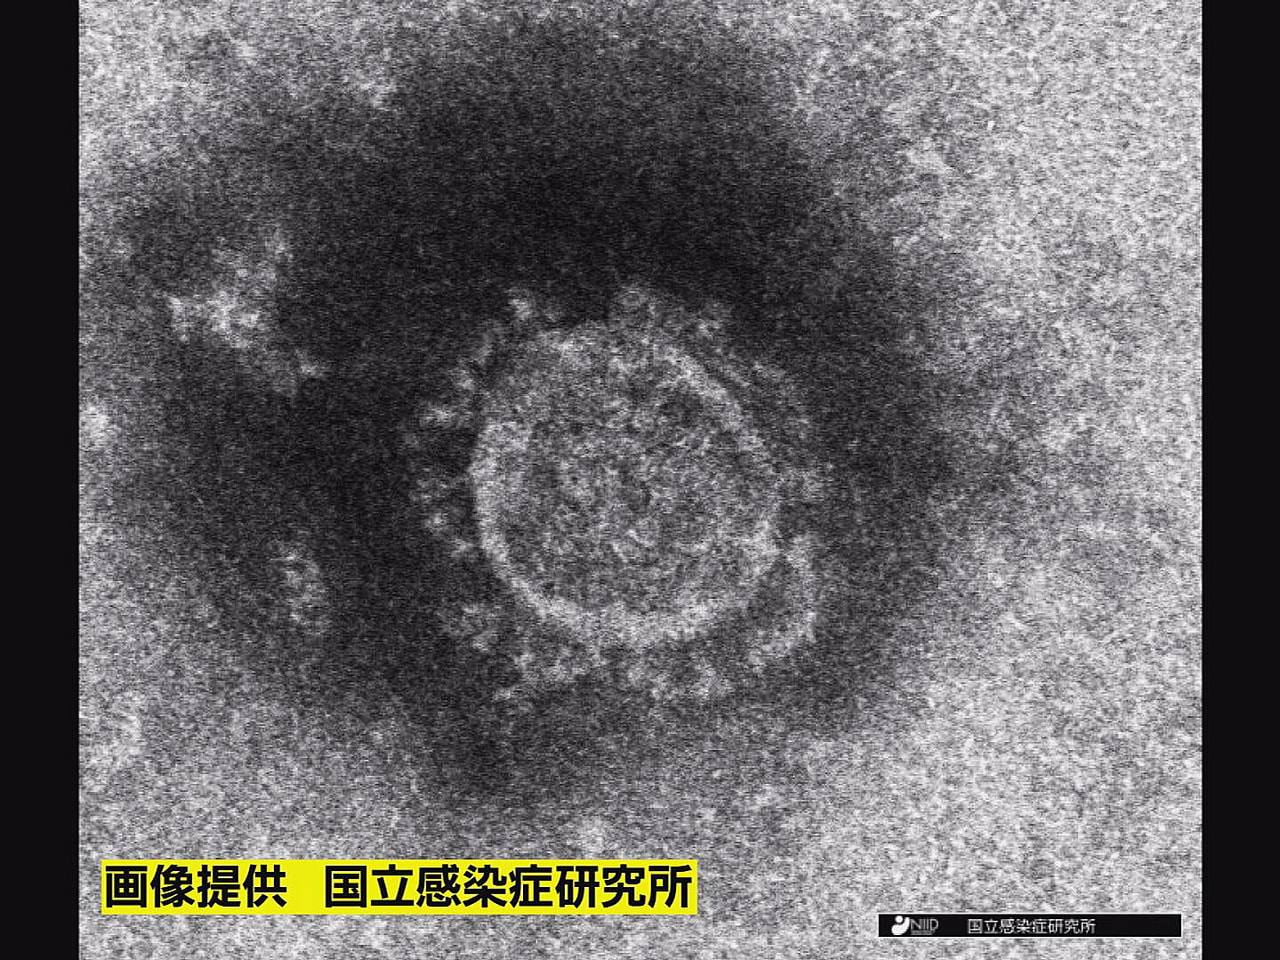 岐阜県は、１１日、新型コロナウイルスの感染が新たに４人確認されたと発表しました。...